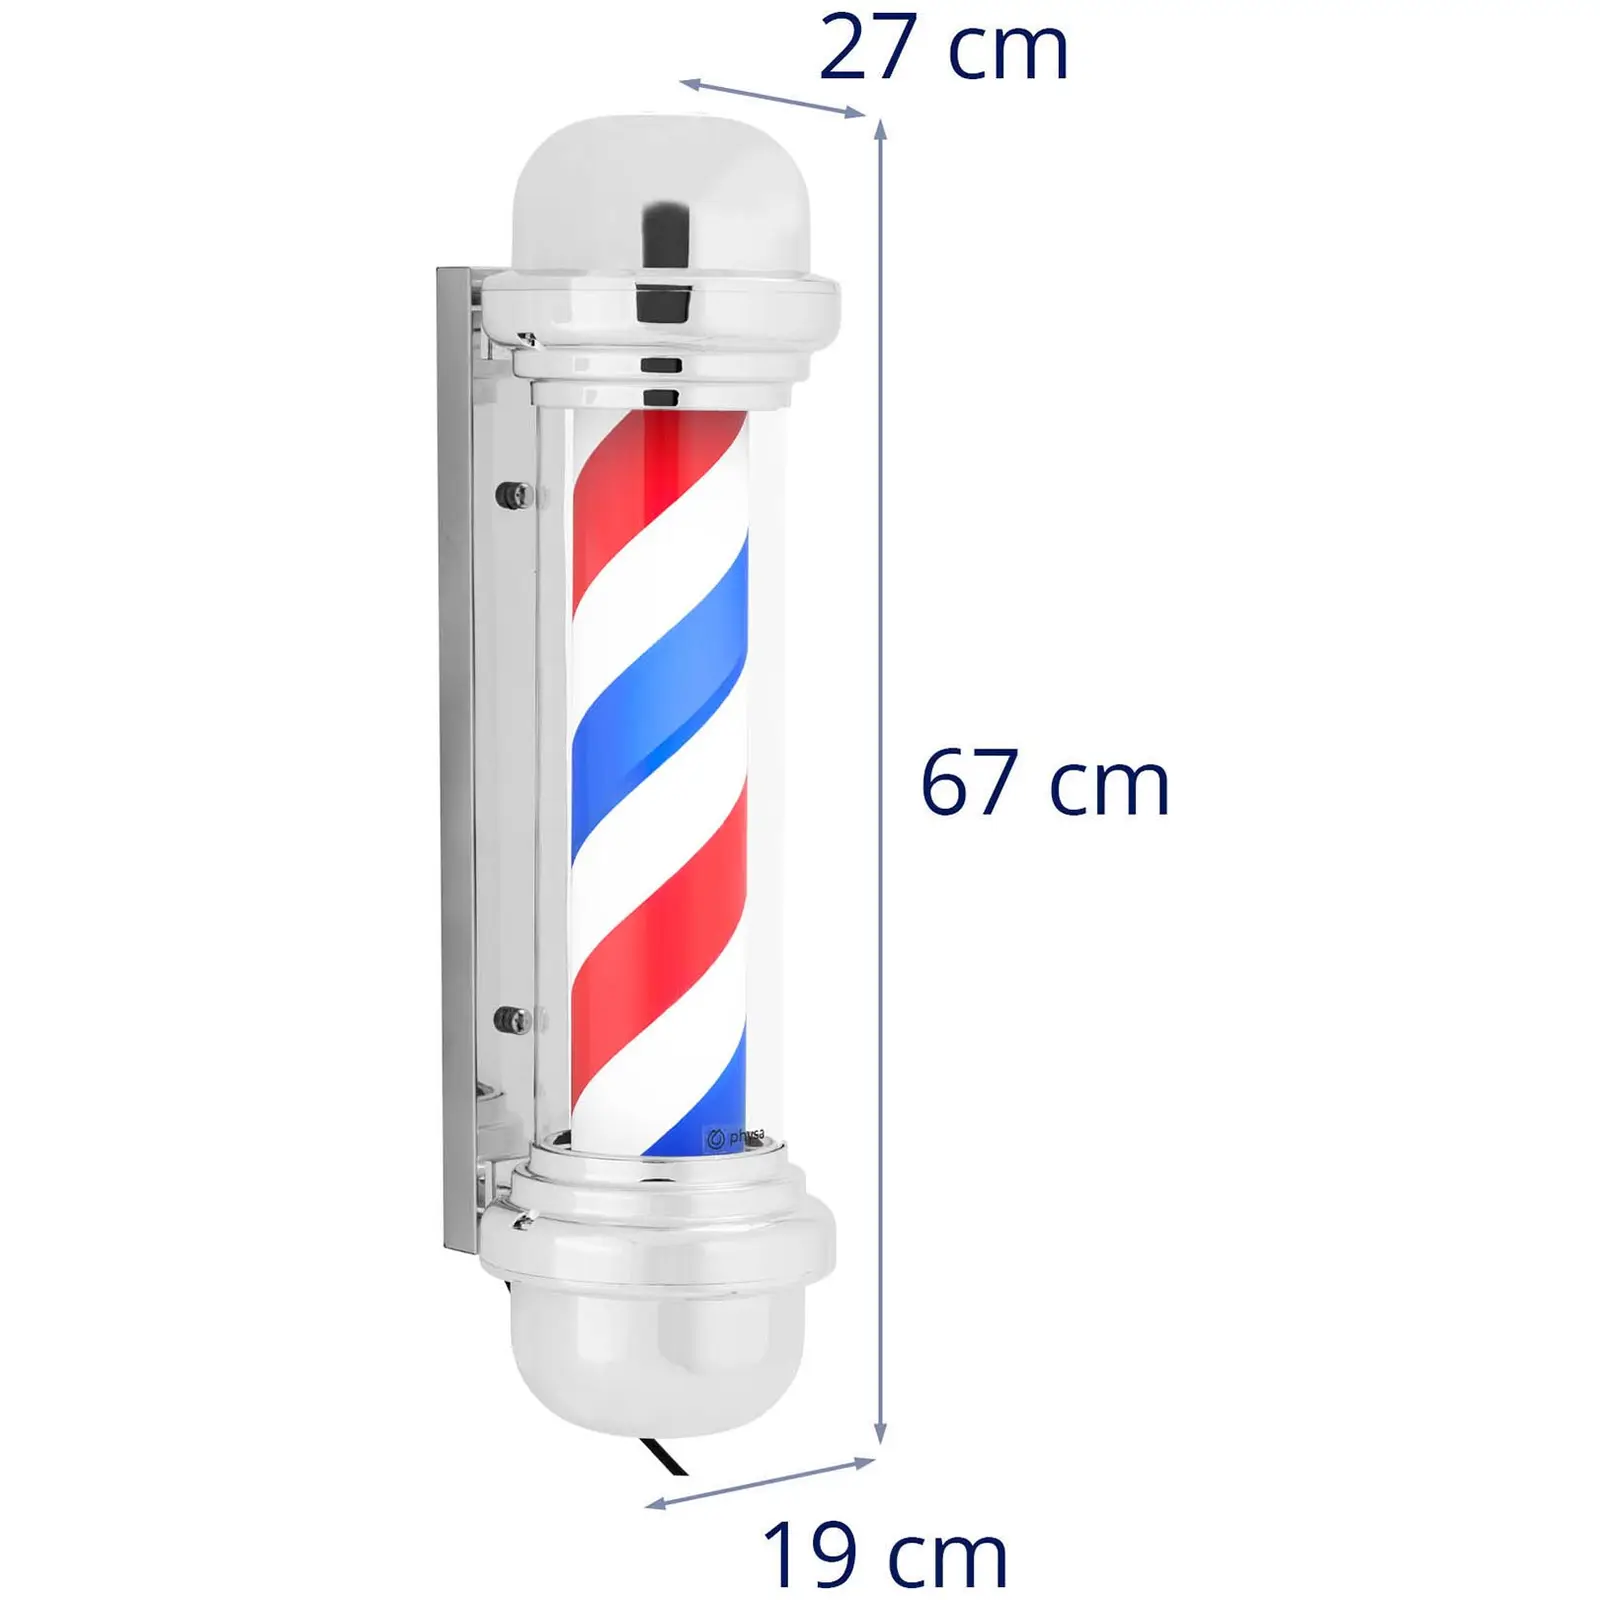 Enseigne de barbier - rotatif et éclairé - 380 mm de hauteur - 25 cm de distance au mur - support argenté